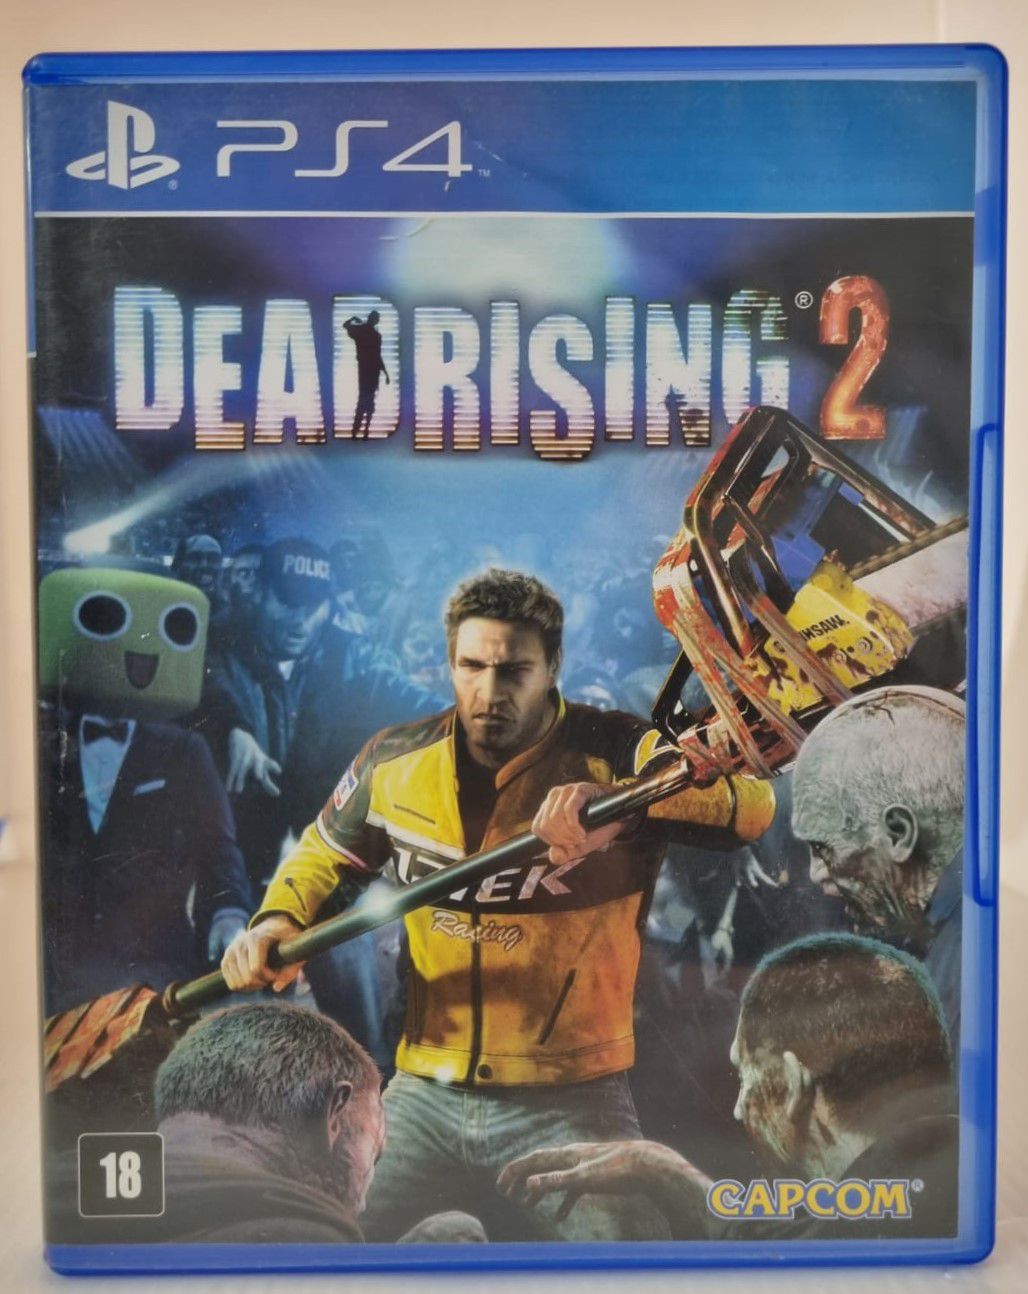 Game - Dead Rising 2 - XBOX 360 em Promoção na Americanas